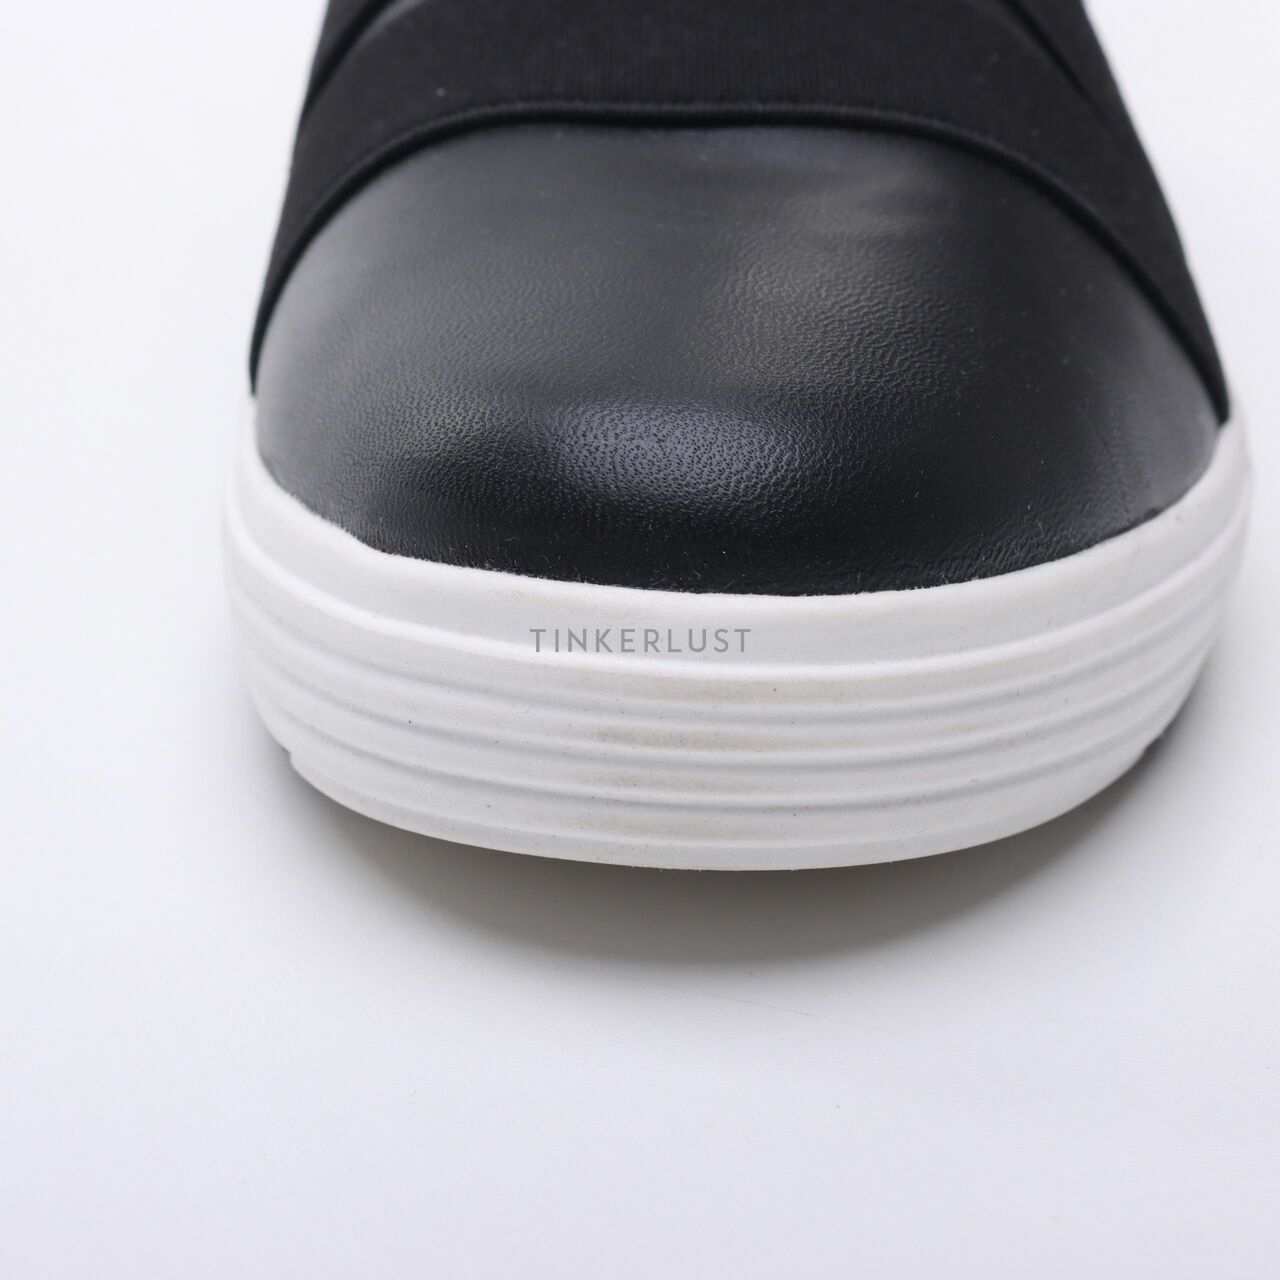 Obermain x Usaflex Black Sneakers